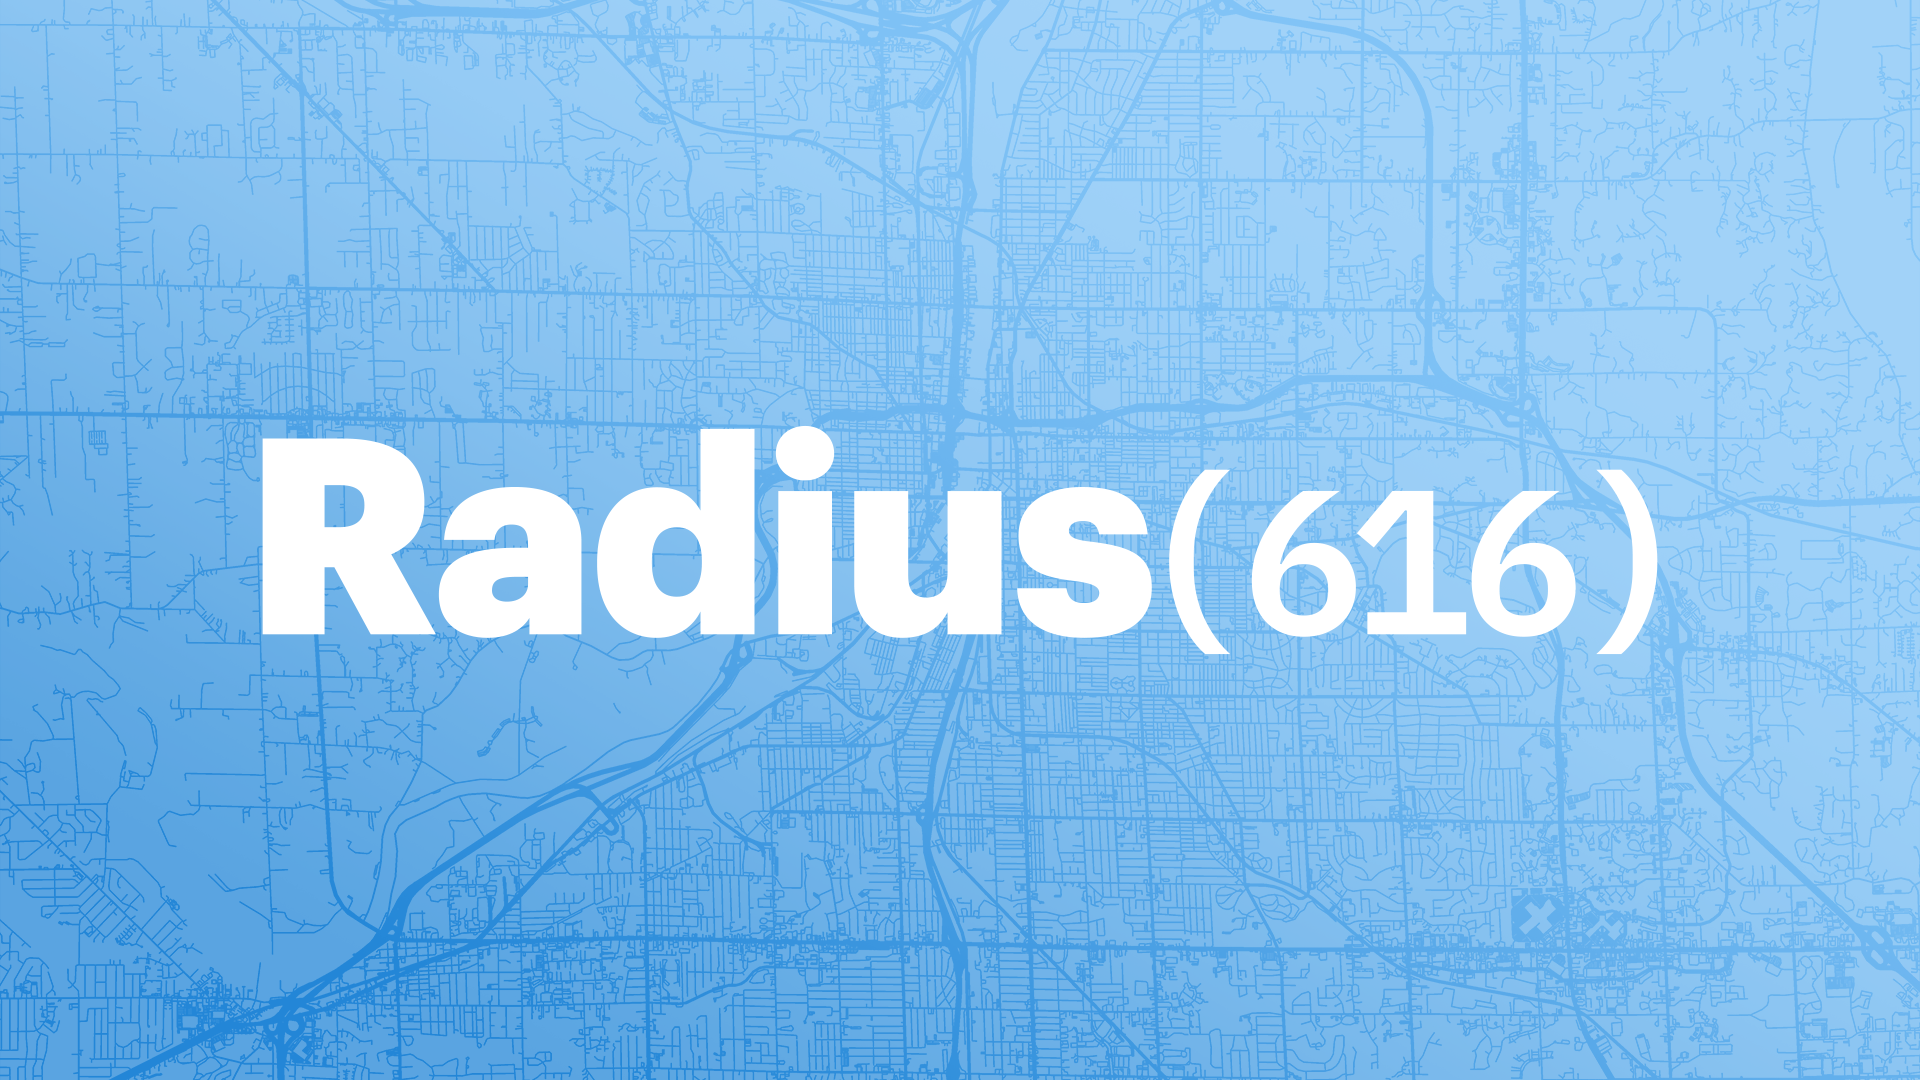 Radius(616) graphic